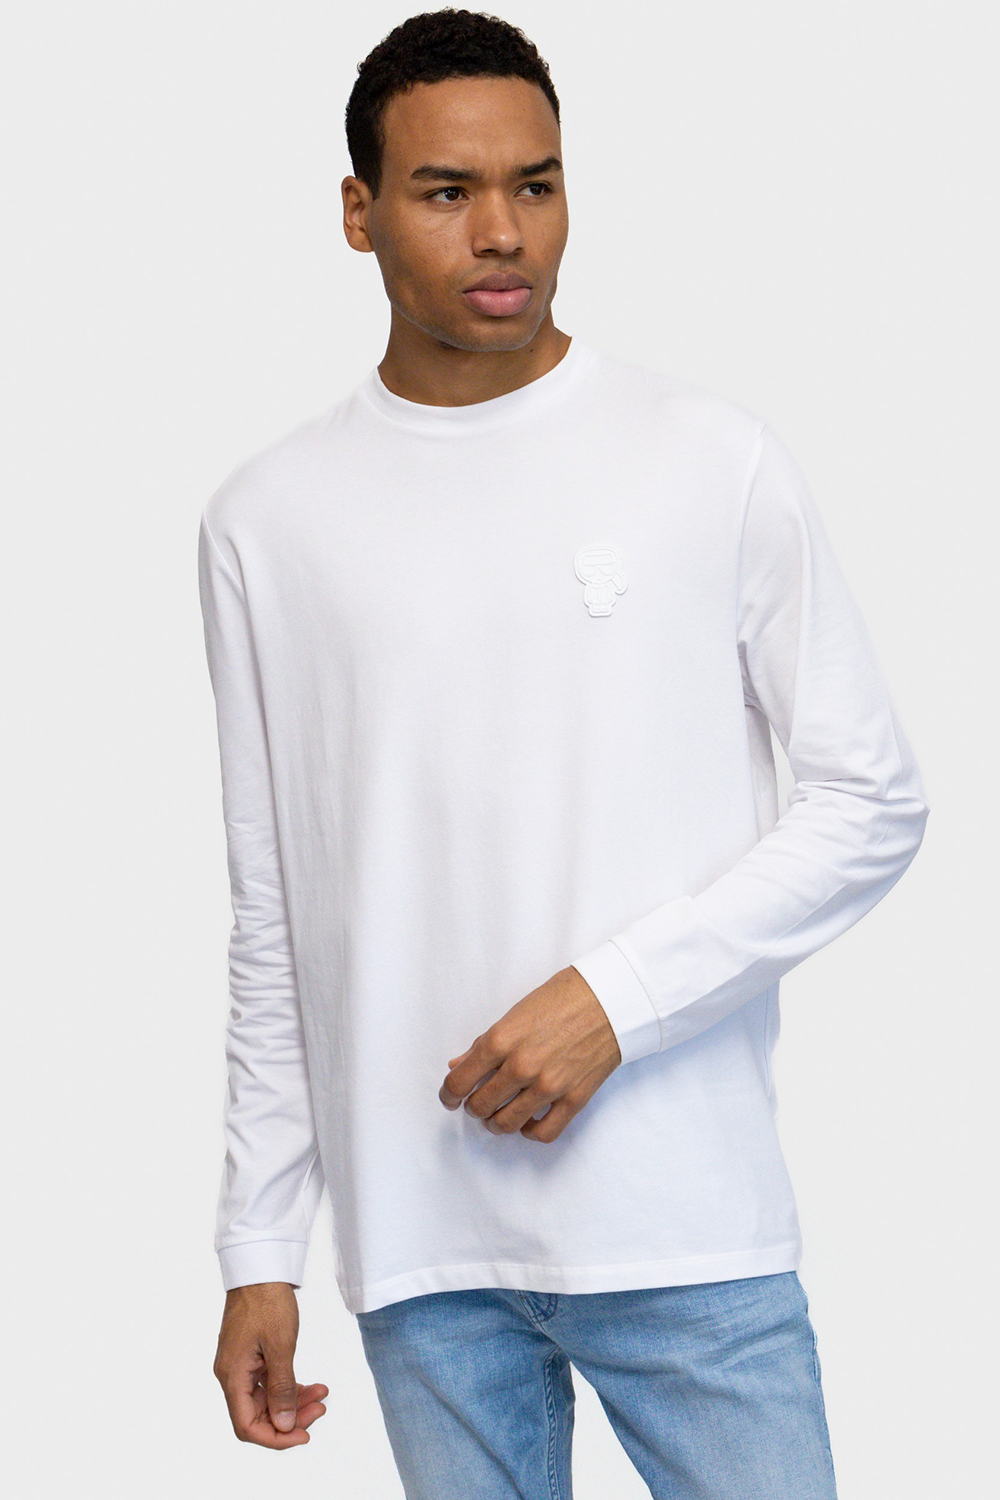 חולצת טי שירט לגברים בצבע לבן KARL LAGERFELD Vendome online | ונדום .